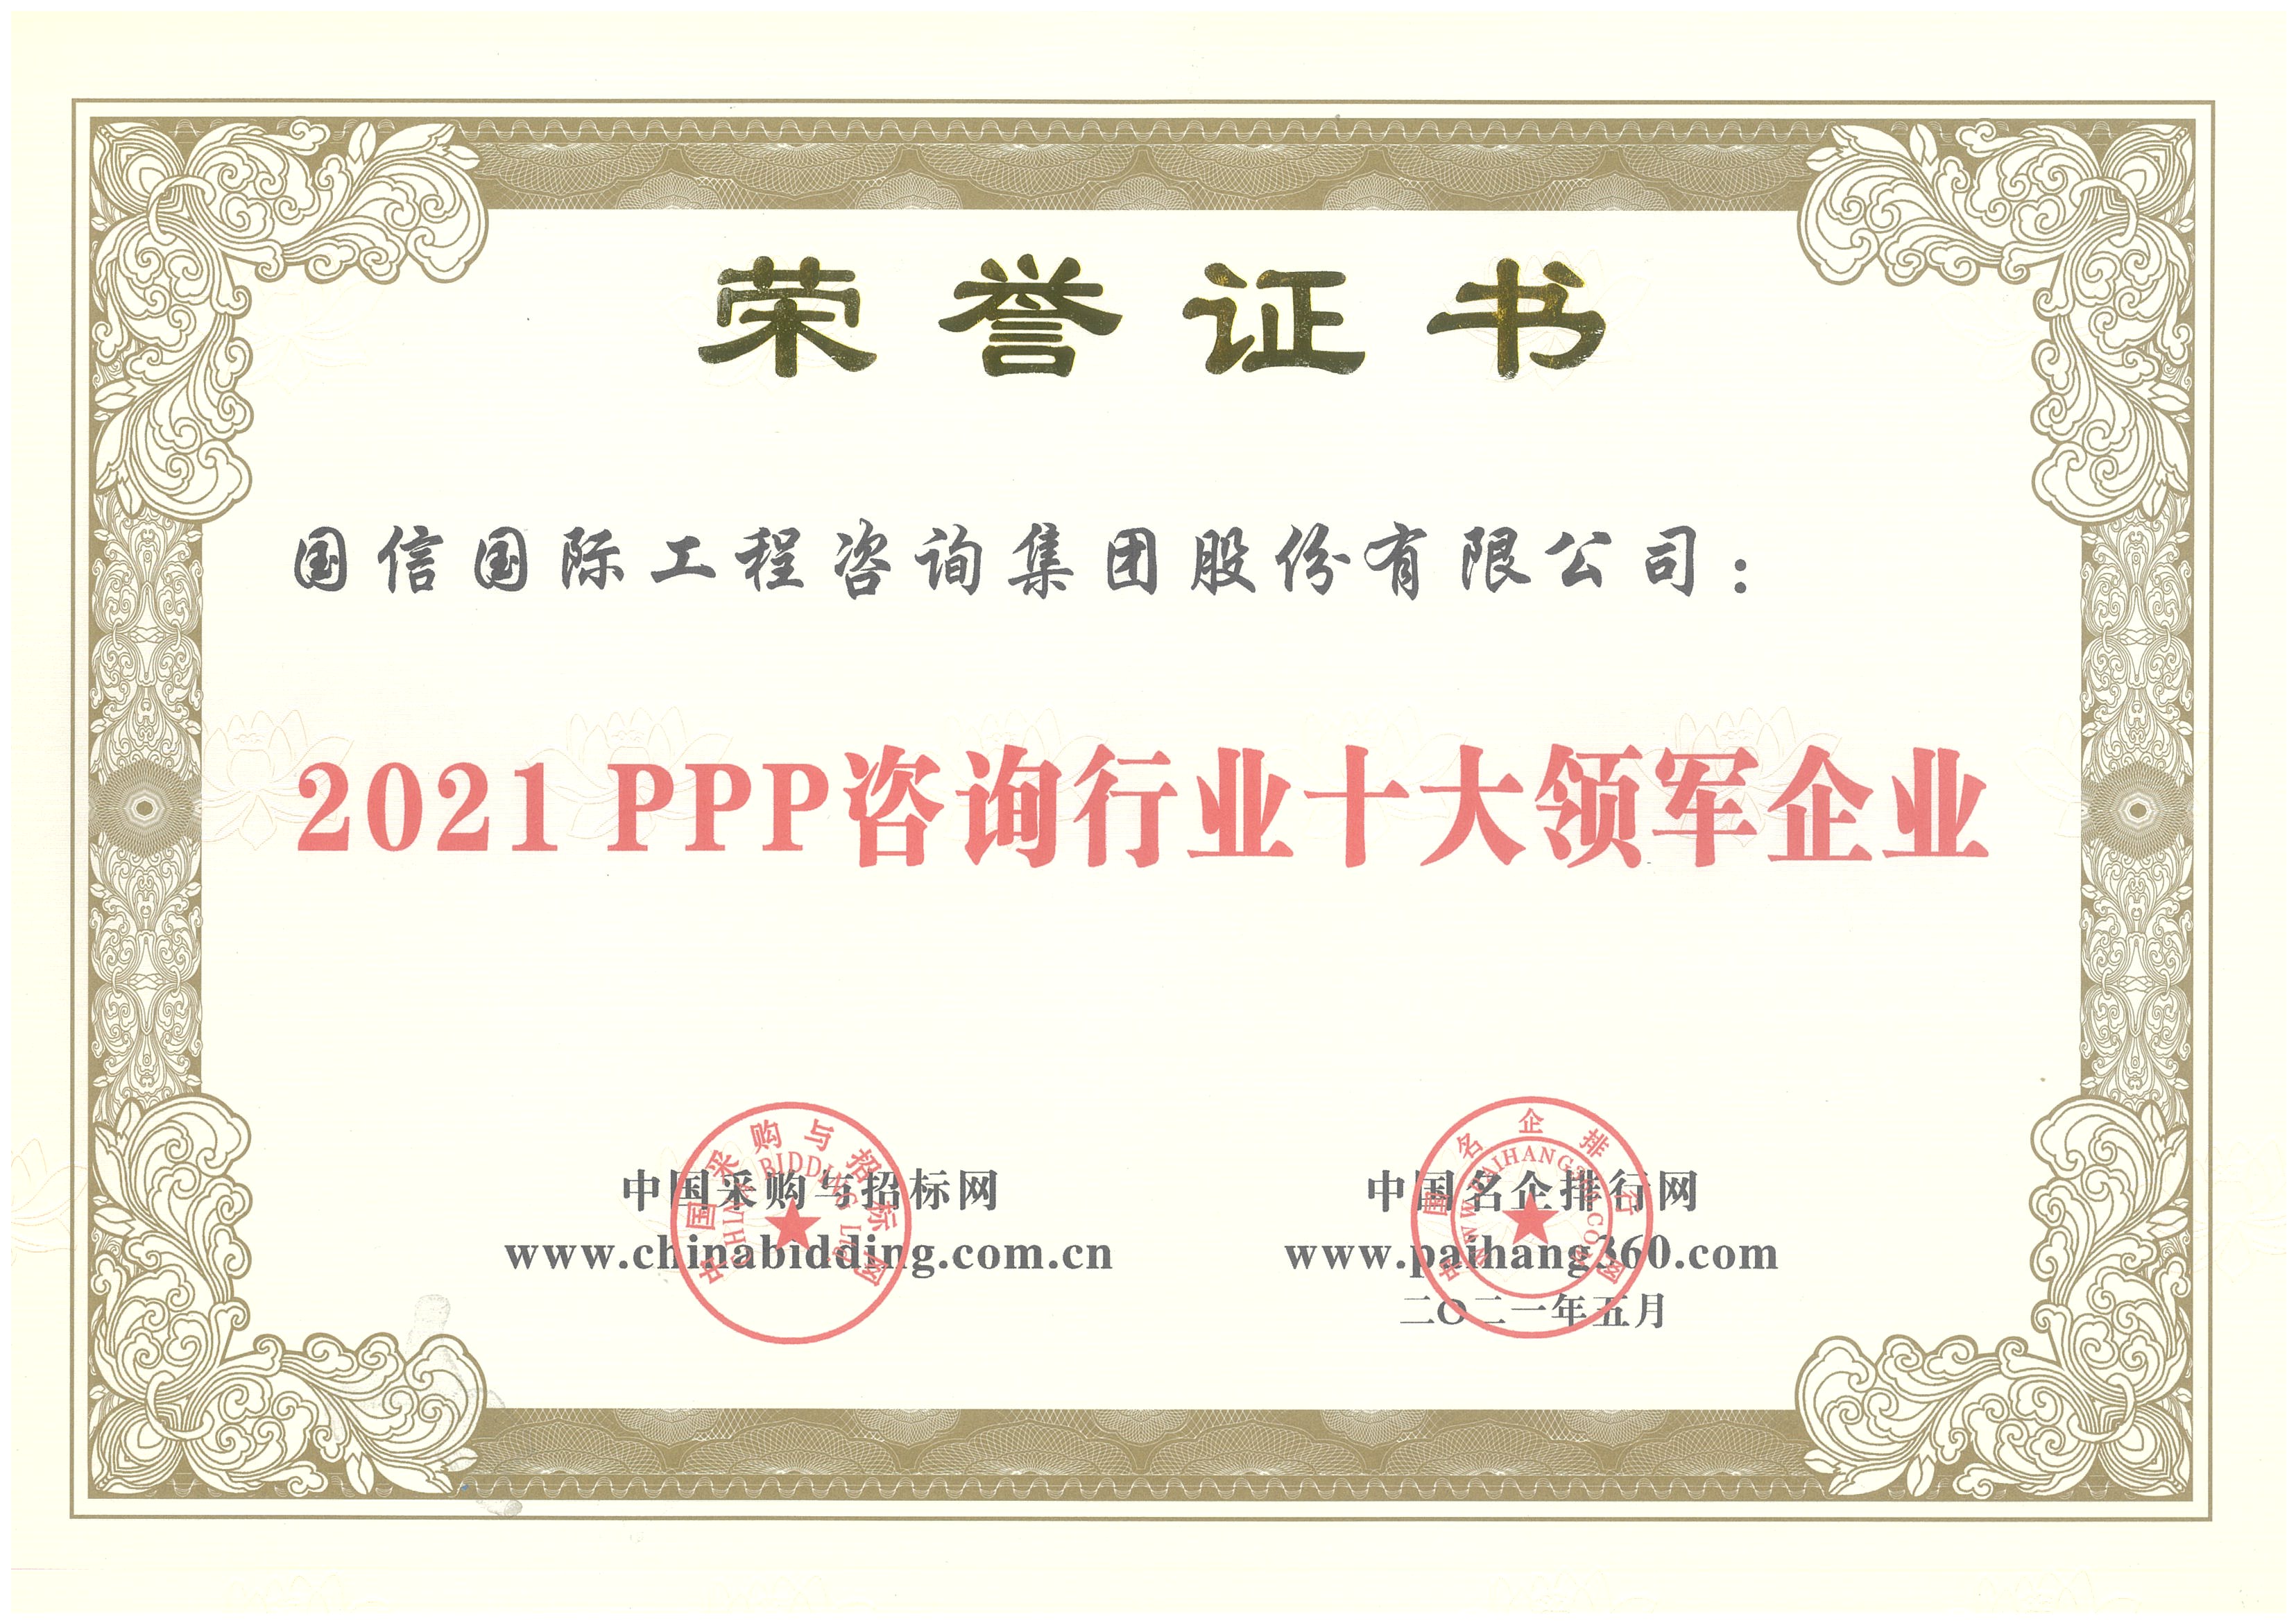 2021PPP咨询行业十大领军企业